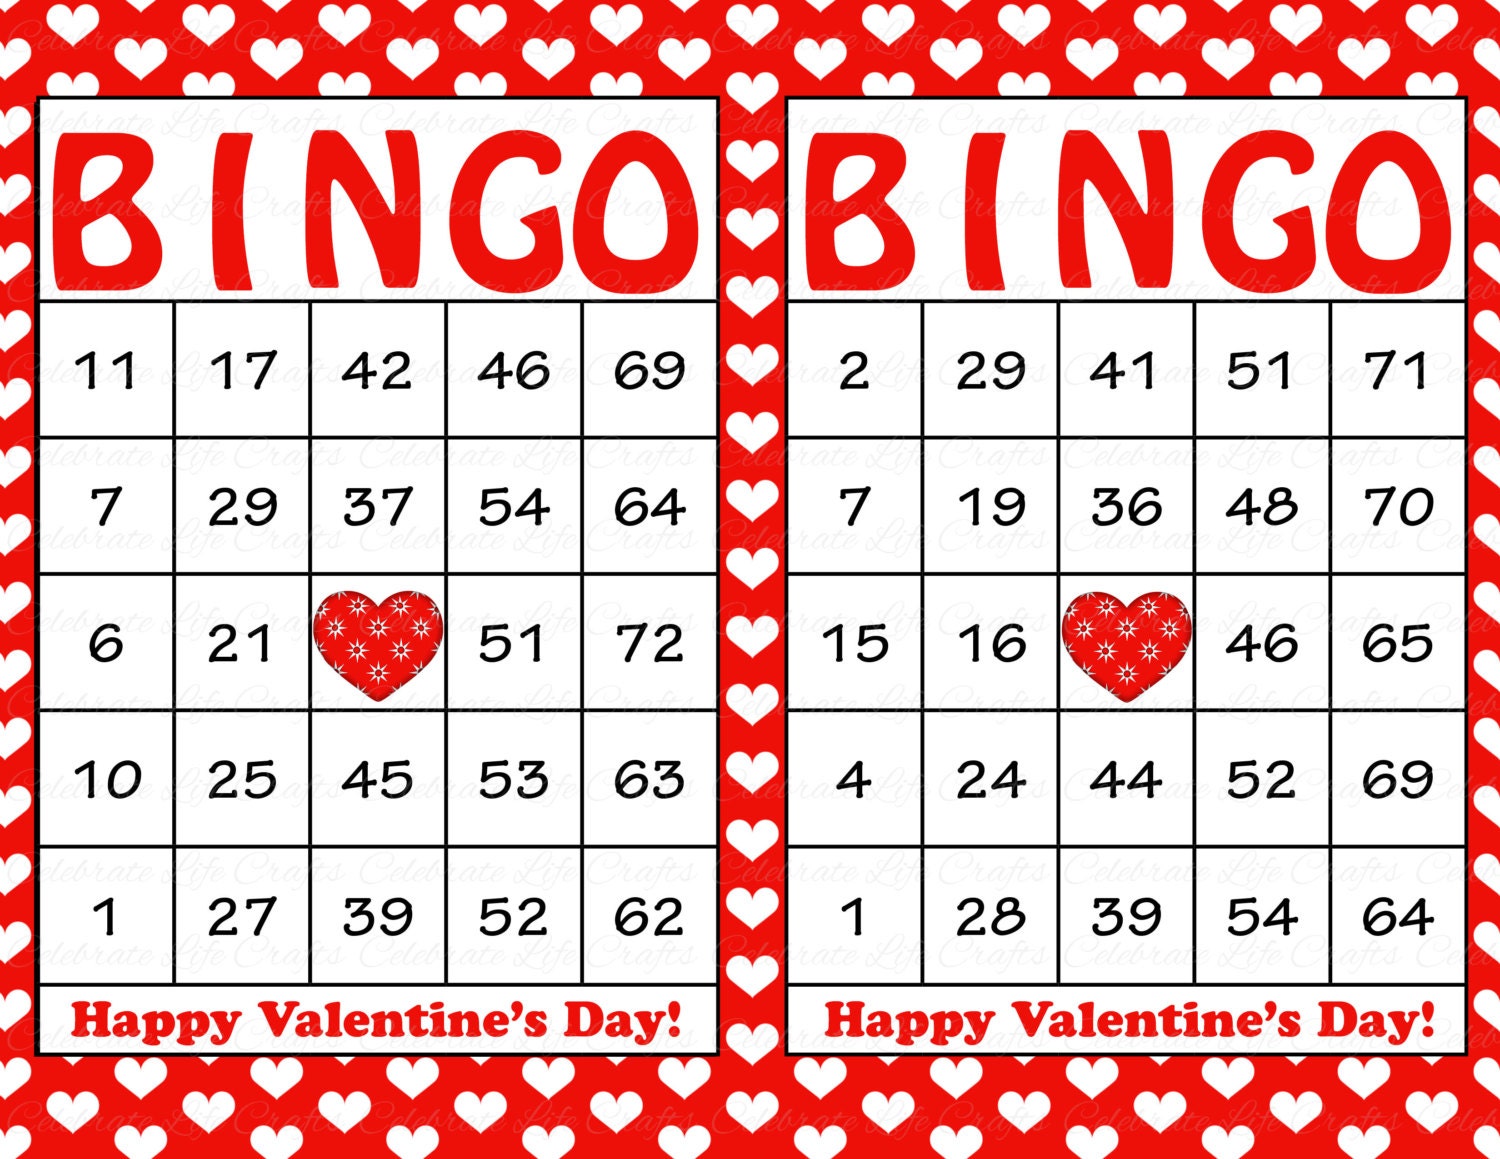 100 Valentine Bingo Cards Printable Valentine Bingo Game